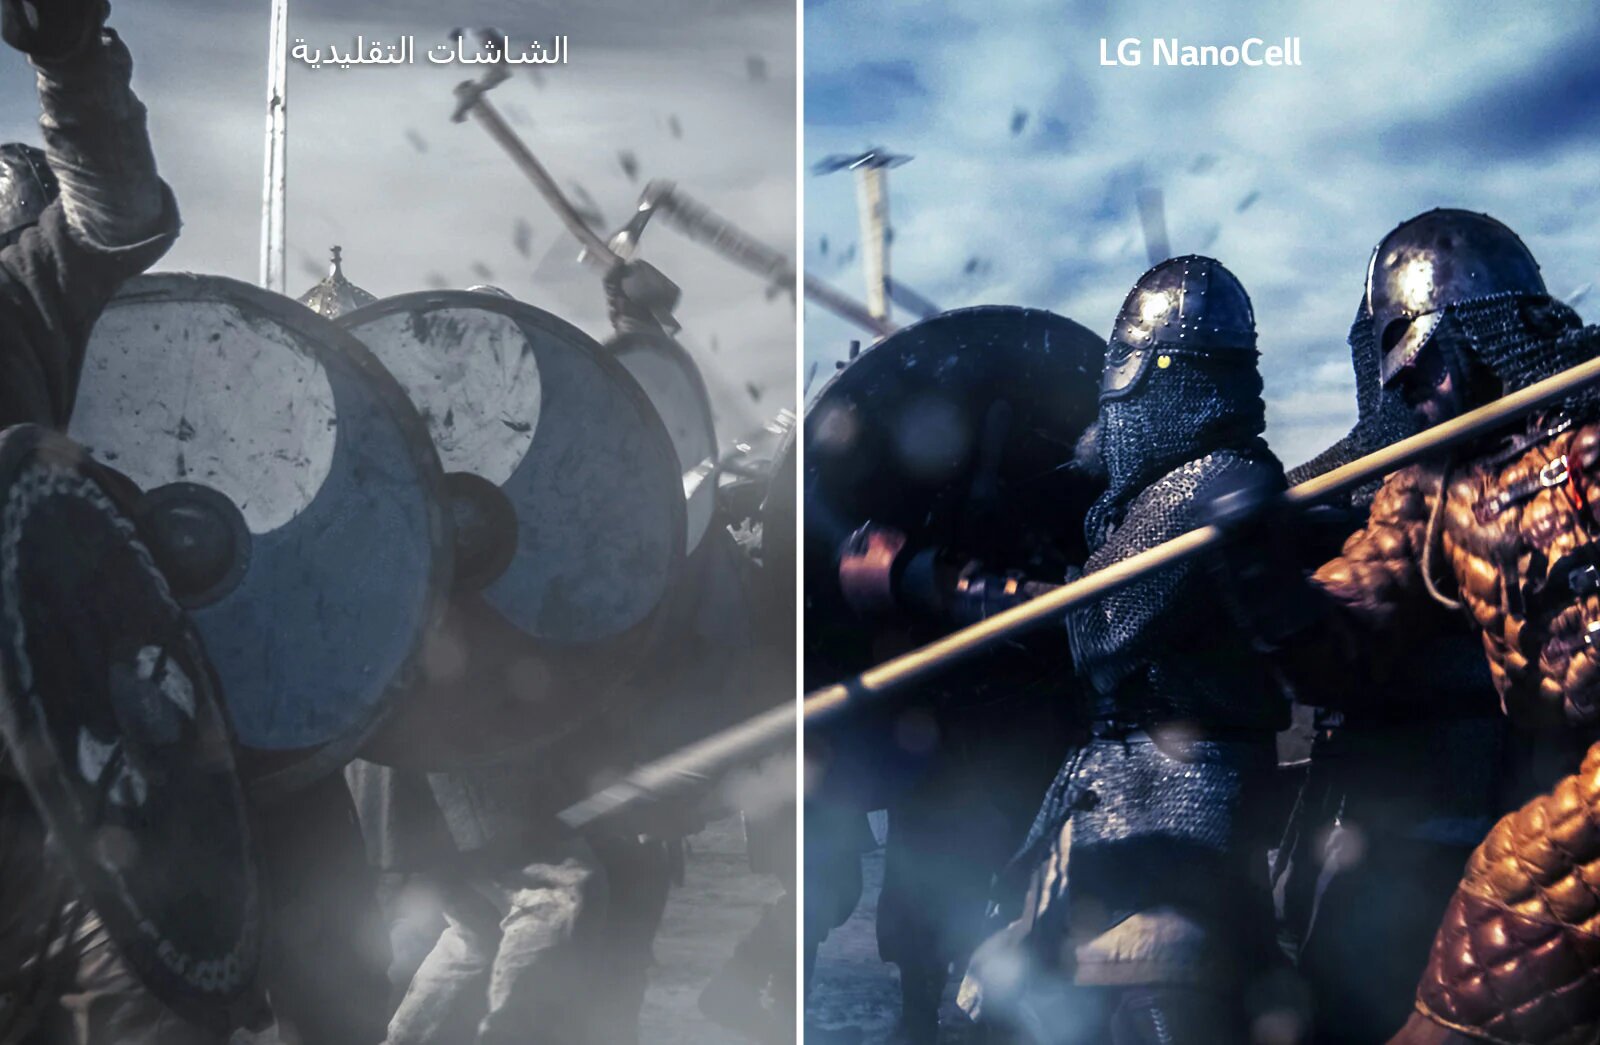 مشهد معركة في فيلم سينمائي مقسوم إلى قسمين. يظهر على اليسار التلفاز التقليدي بألوان باهتة، ويظهر على اليمين صورة أكثر إشراقًا وتفصيلاً كما يظهر على تلفازLG NanoCell. 